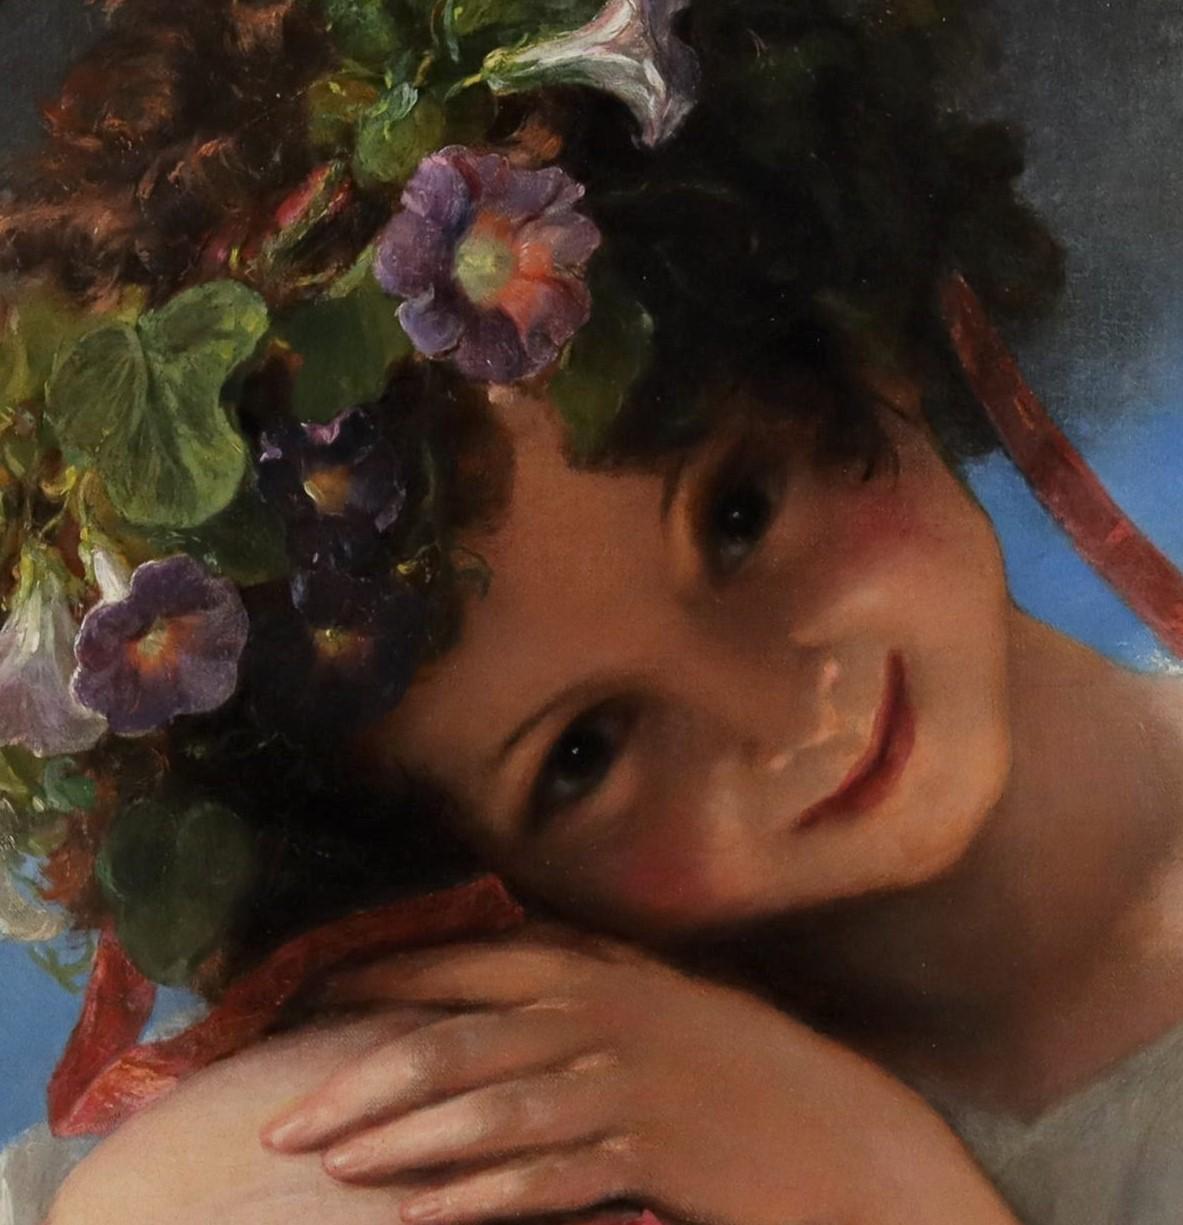 James Holland (1799 -1870) und William Henry Hunt (1790-1864) zugeschrieben

Porträt eines jungen Mädchens, das eine Girlande aus Morning Glory Blumen trägt

Öl auf Leinwand: 17 ½ x 18 Zoll. Rahmen: 23 ½ x 24 Zoll. CIRCA 1820

Ein bezauberndes